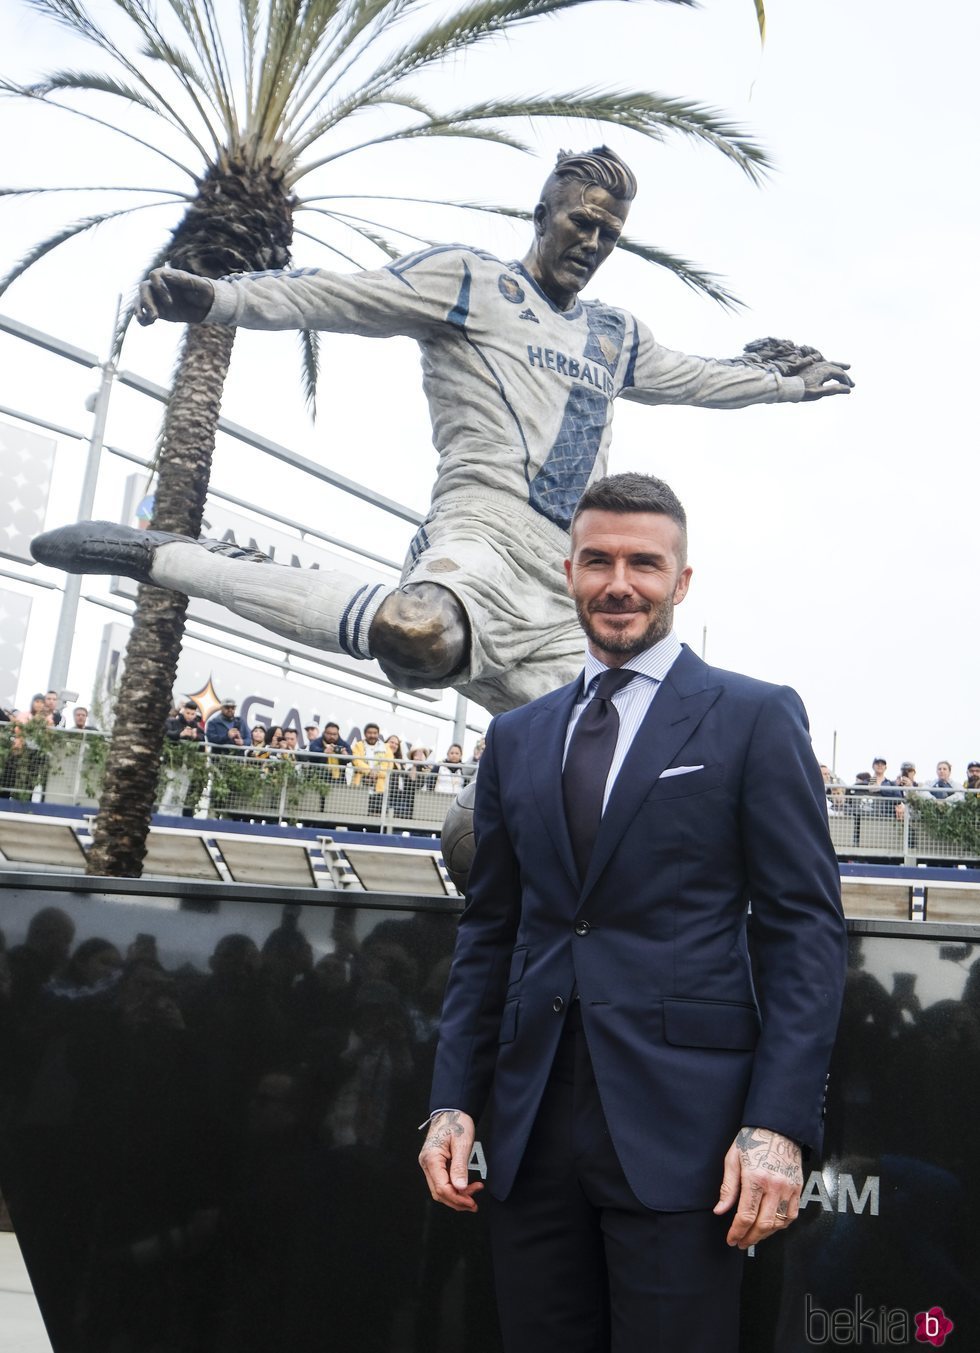 David Beckham posa junto a su estatua